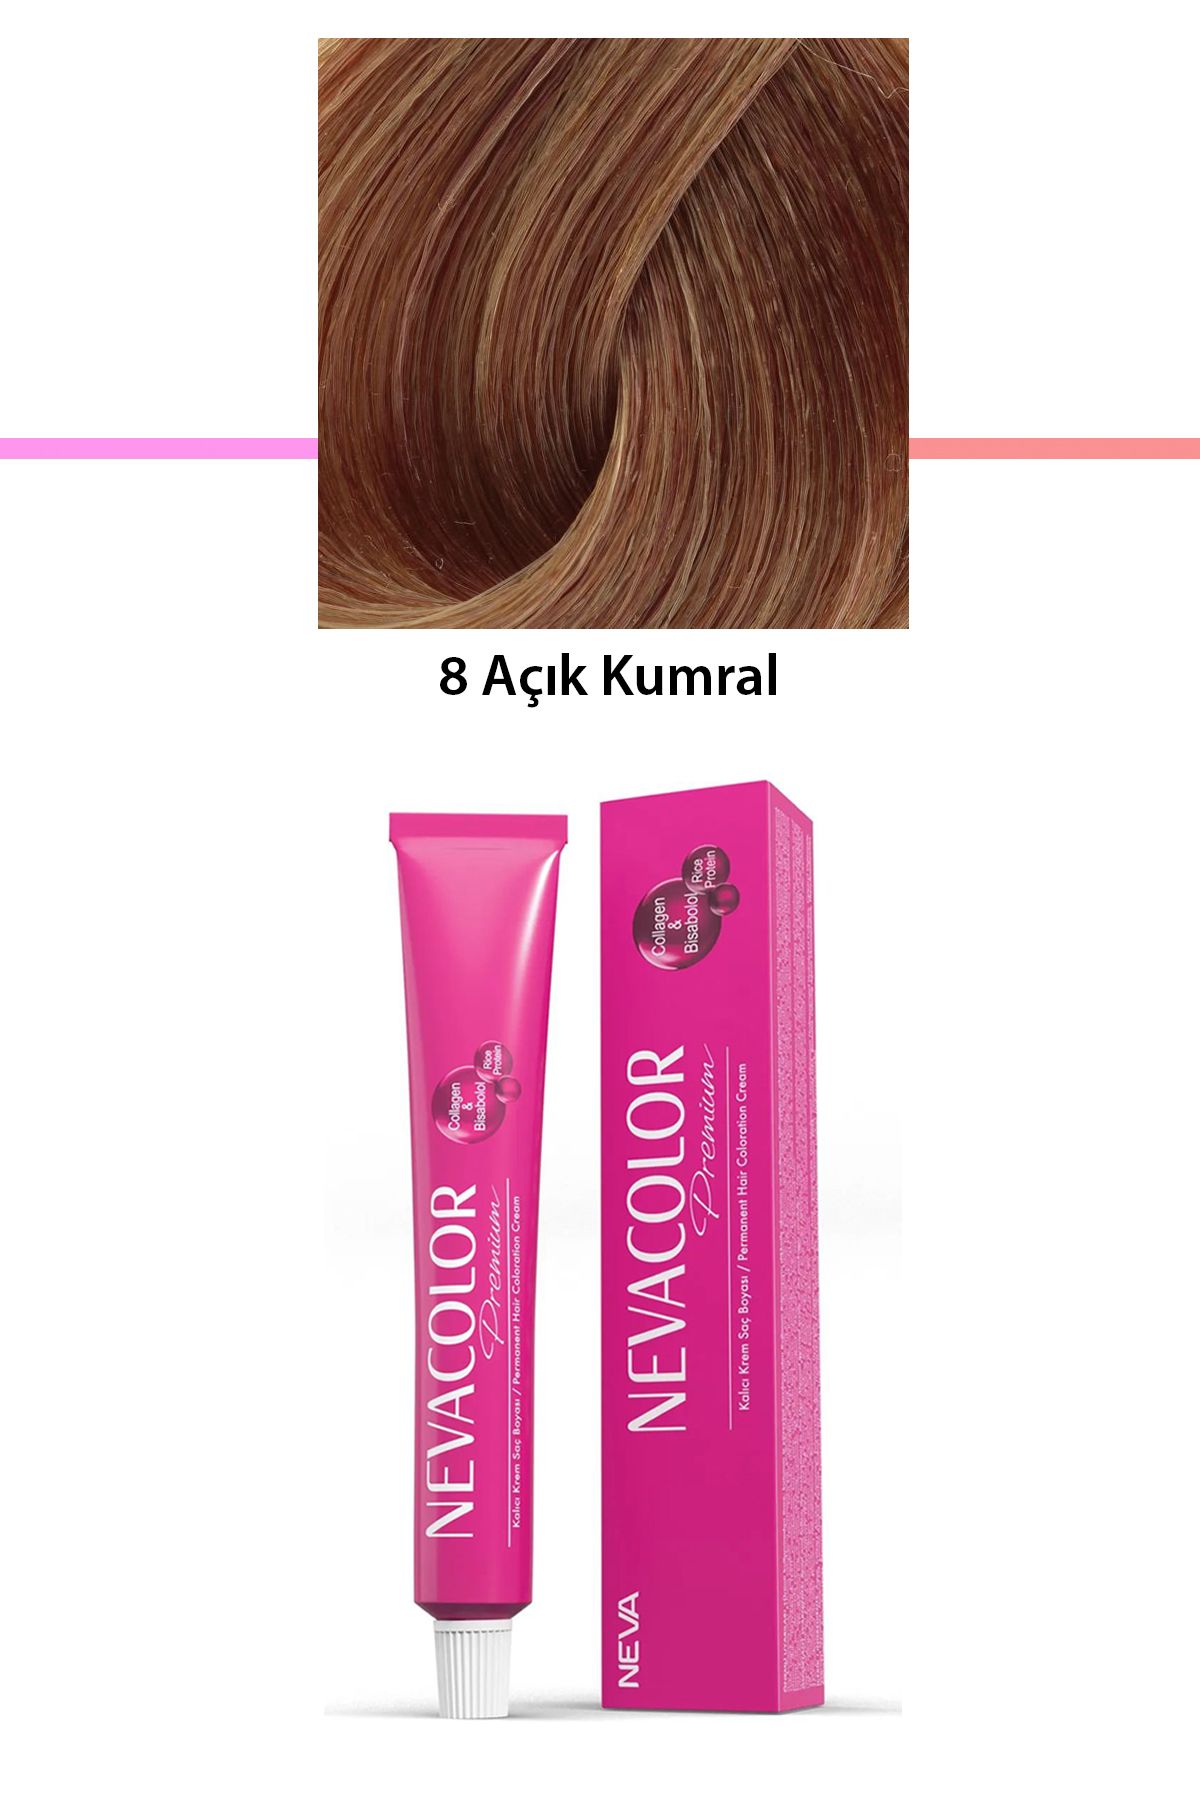 Neva Color Premium 8 Açık Kumral - Kalıcı Krem Saç Boyası 50 g Tüp